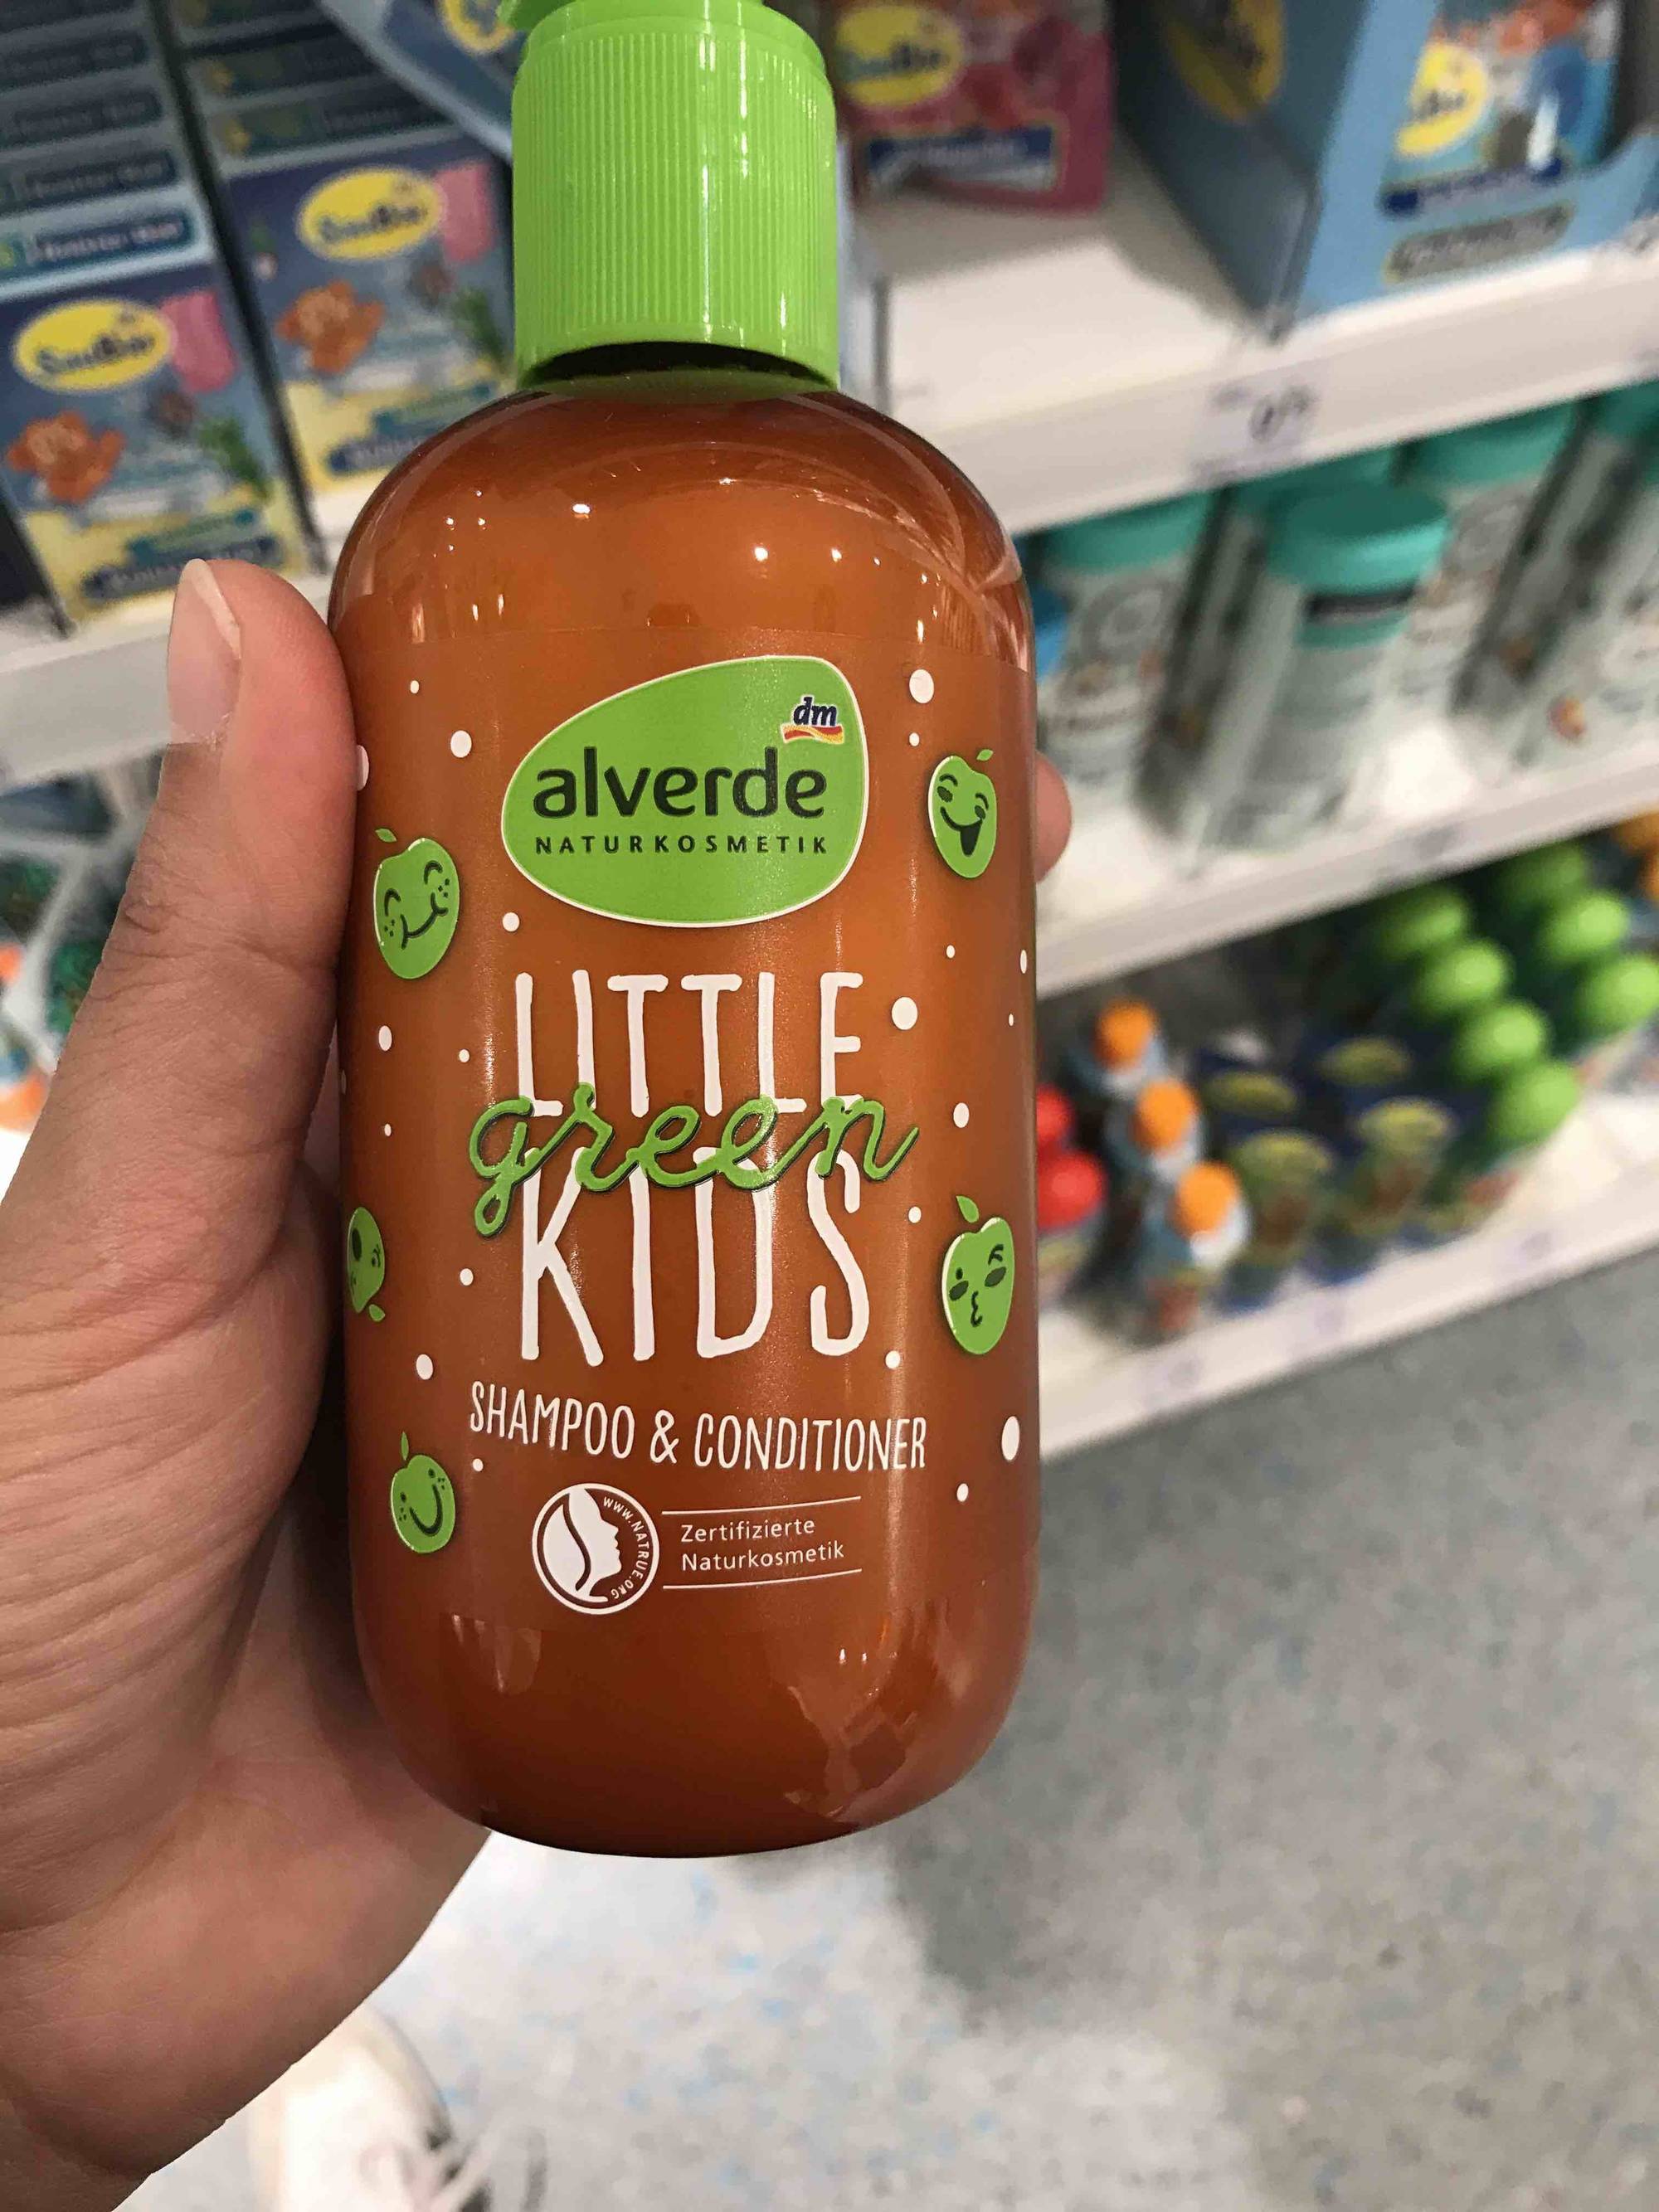 ALVERDE - Little green kids - Shampoo & conditioner